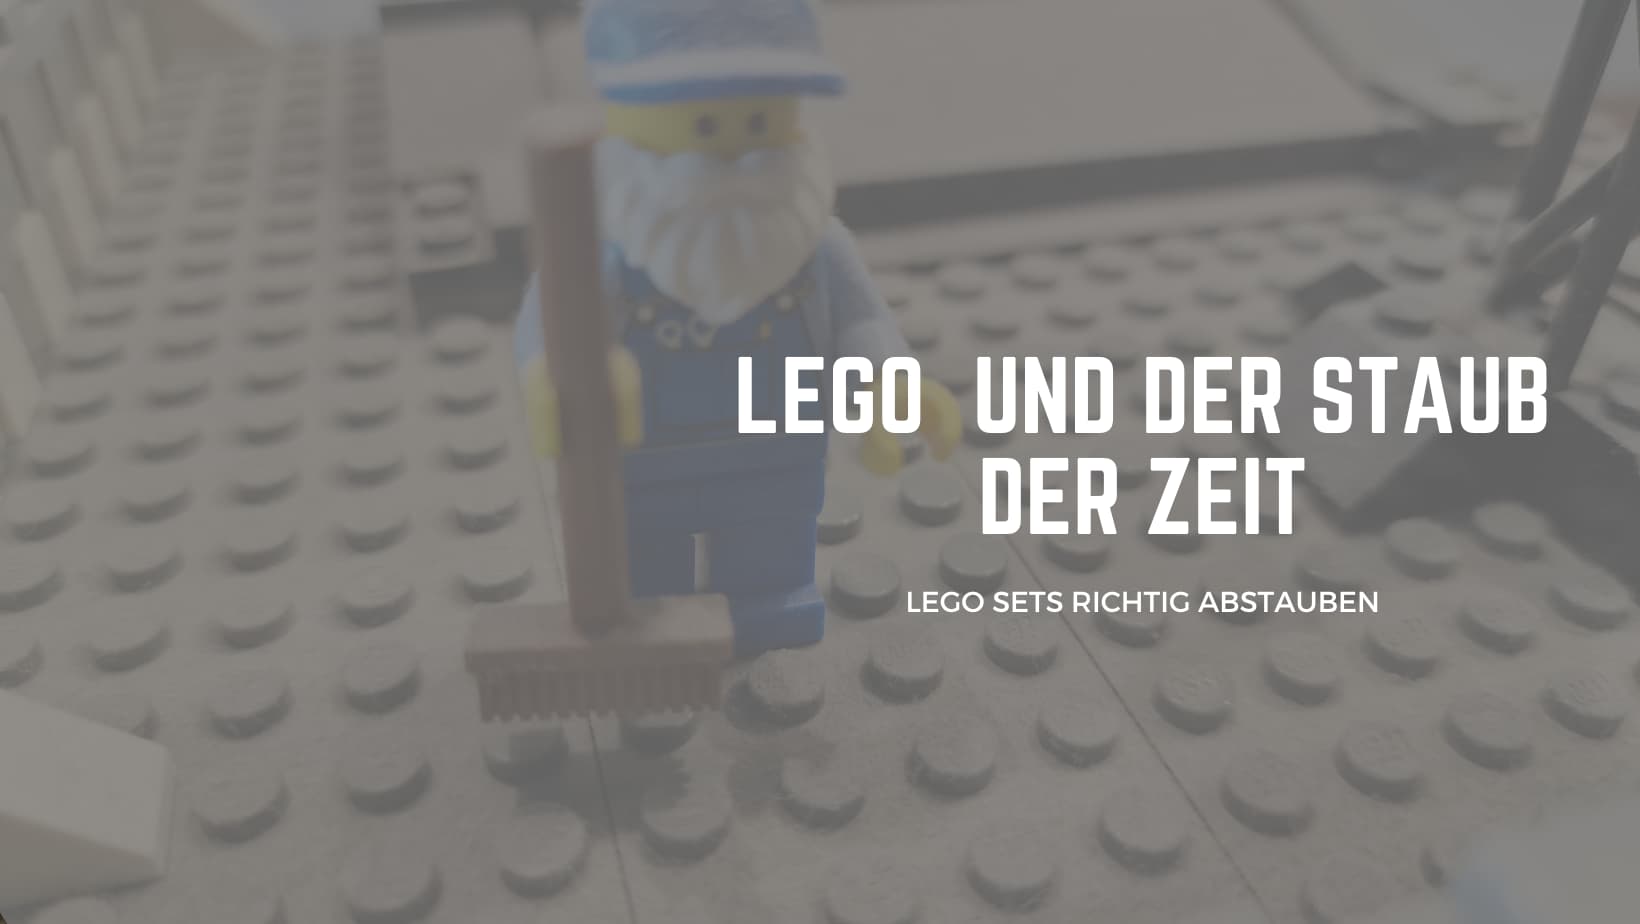 LEGO Abstauben - aber richtig